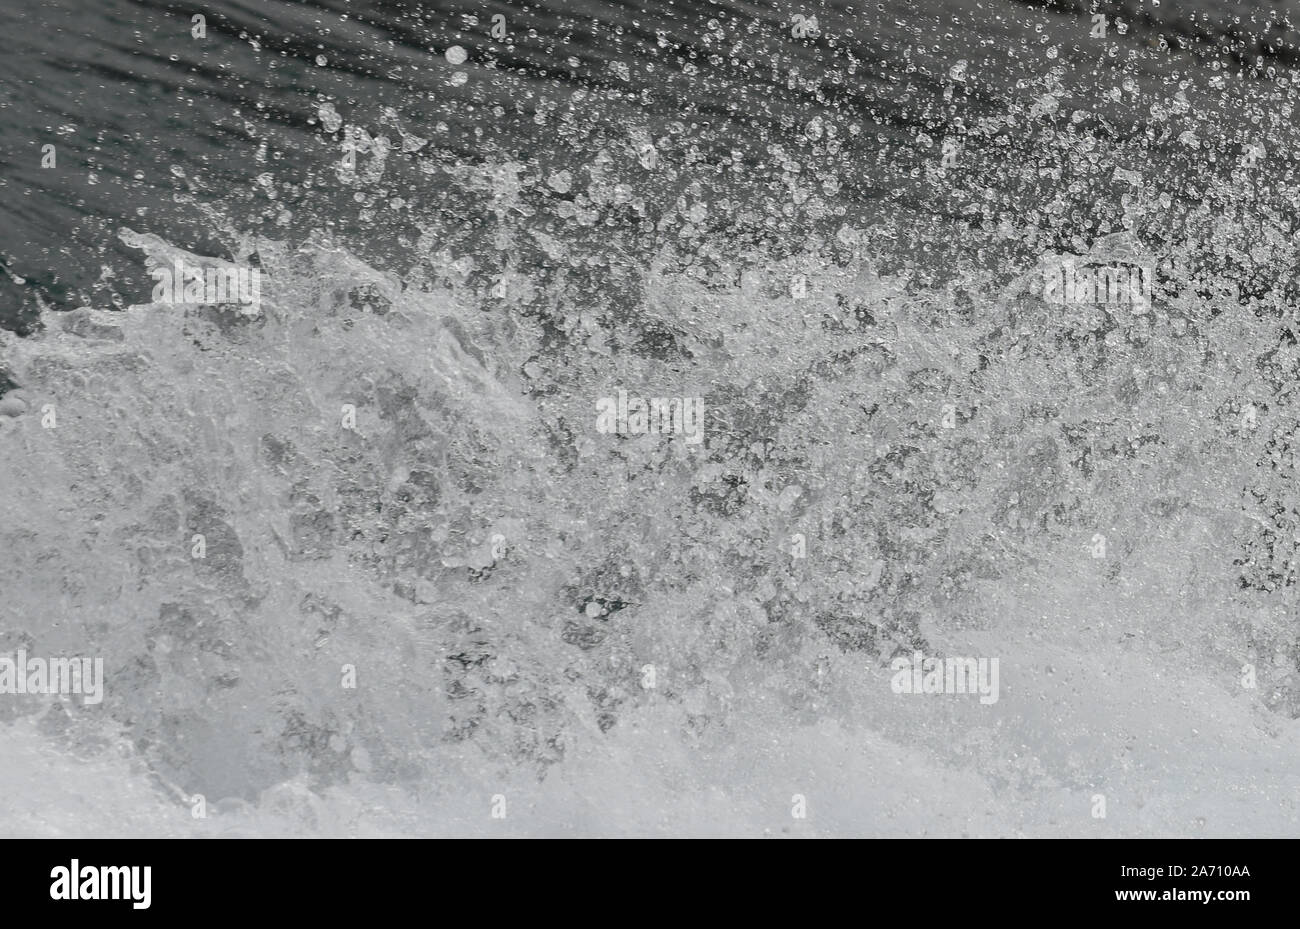 Antecedentes de un spray de agua y las gotas de agua se queda en la estela de un jet boat Foto de stock